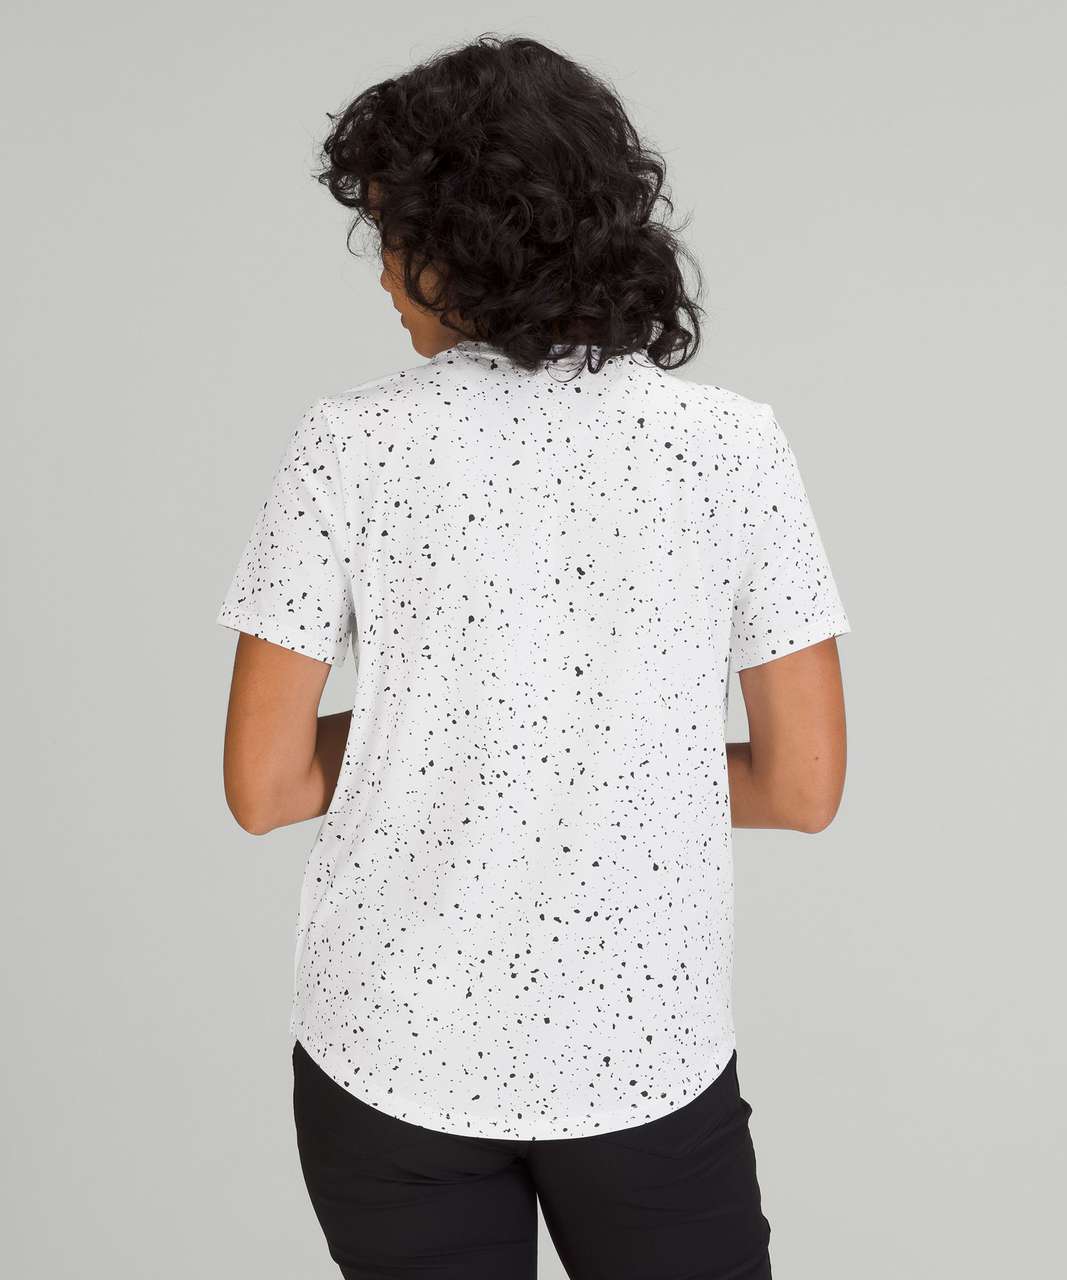 Lululemon Love Crew Short Sleeve T-Shirt - Revitalize Splatter White Graphite Grey